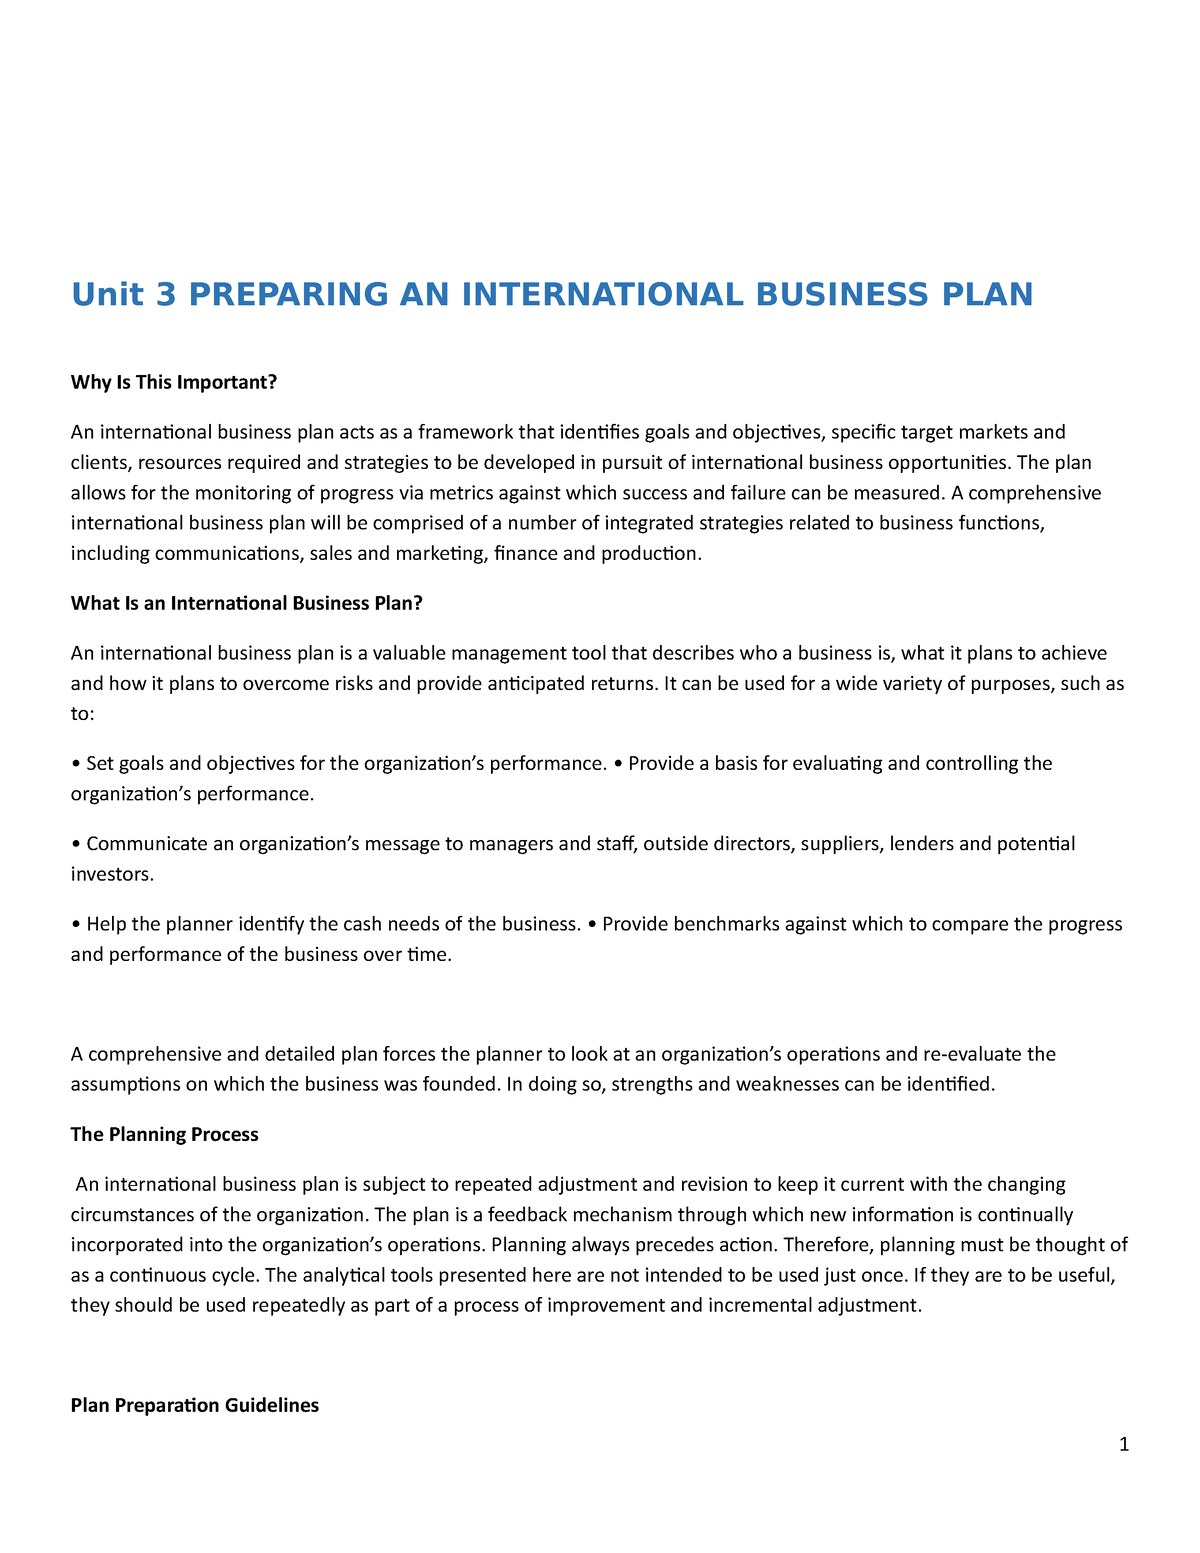 an international business plan